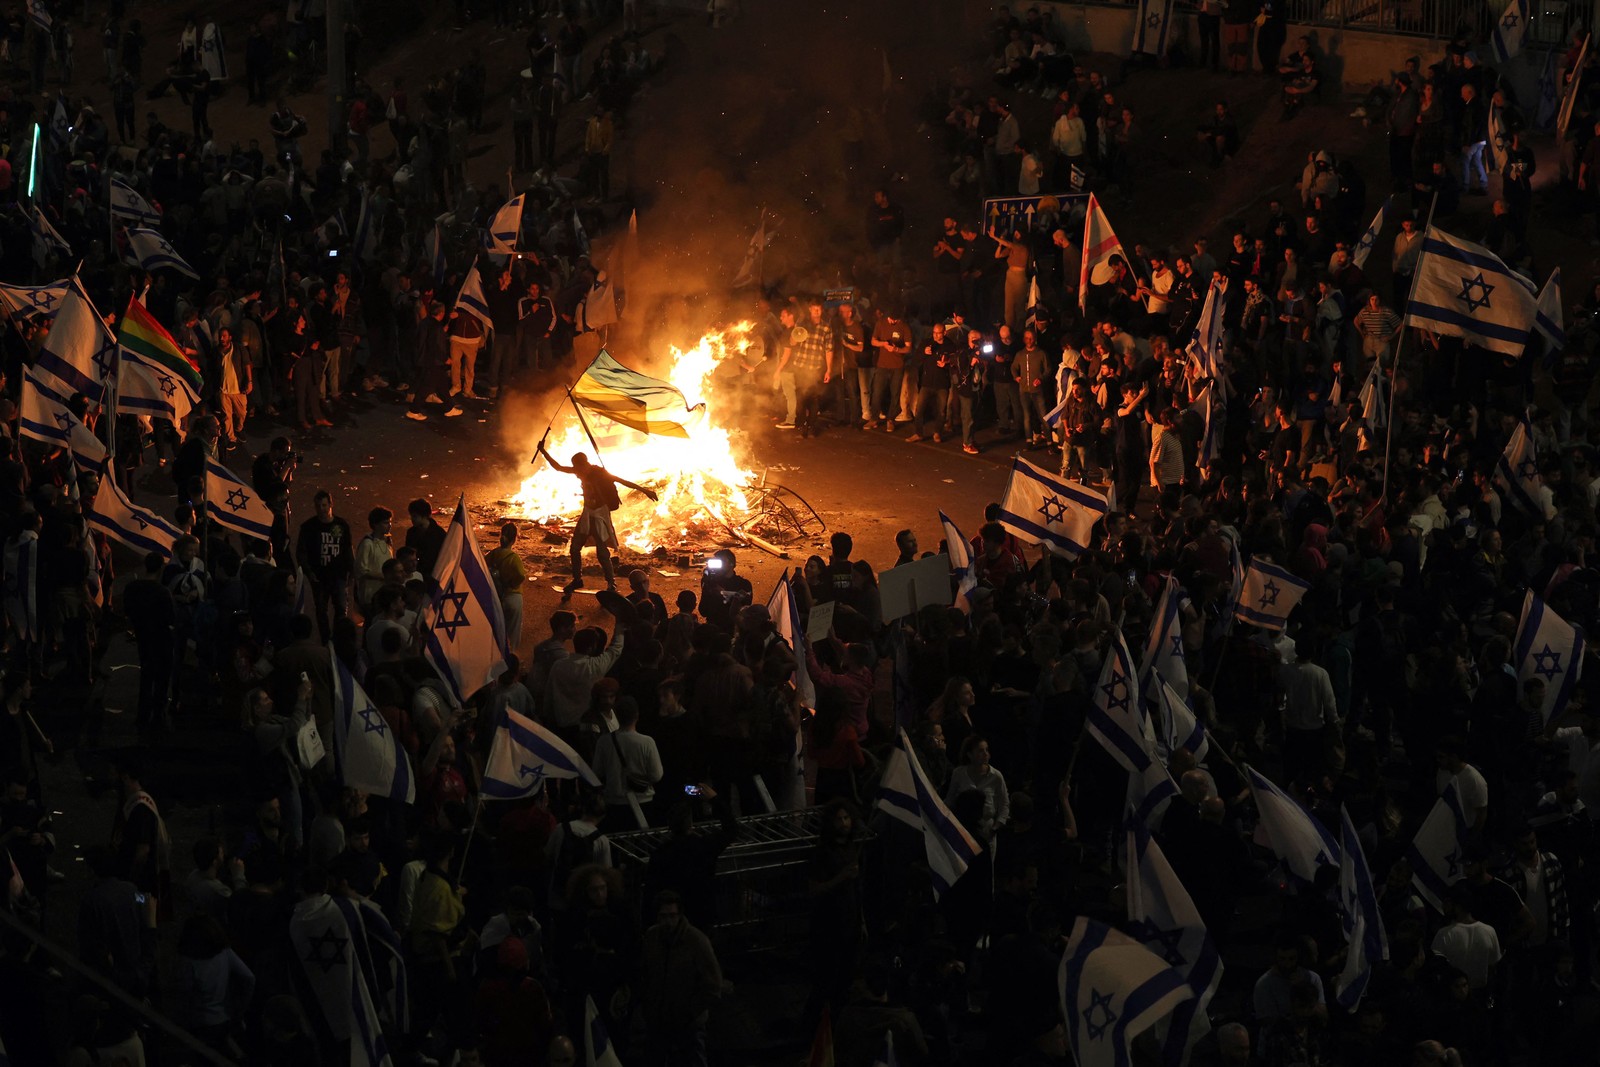 Manifestantes bloqueiam uma estrada e seguram bandeiras nacionais enquanto se reúnem em torno de uma fogueira durante uma manifestação contra a reforma judicial do governo israelense em Tel Aviv — Foto: AHMAD GHARABLI / AFP